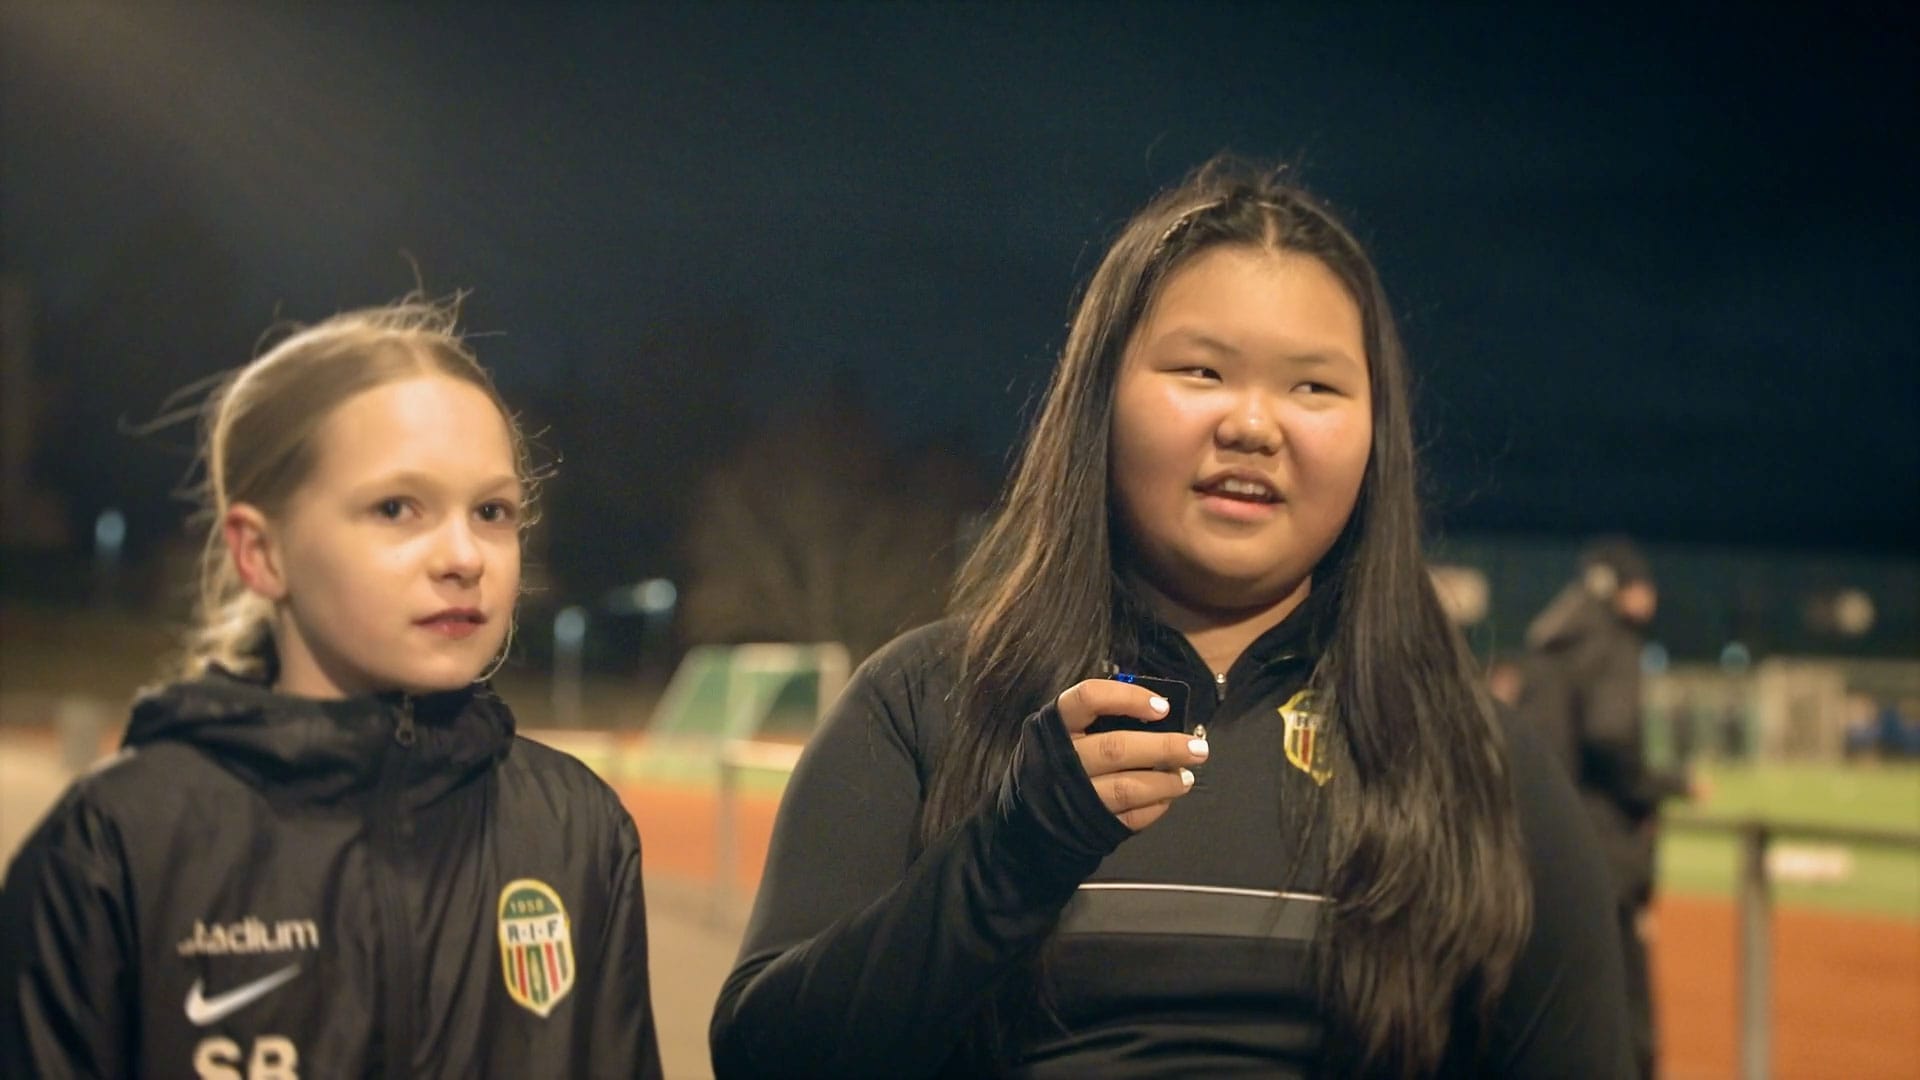 Ladda video: Videon handlar om varför fotboll är viktigt för att ge unga och barn en meningsfull fritid